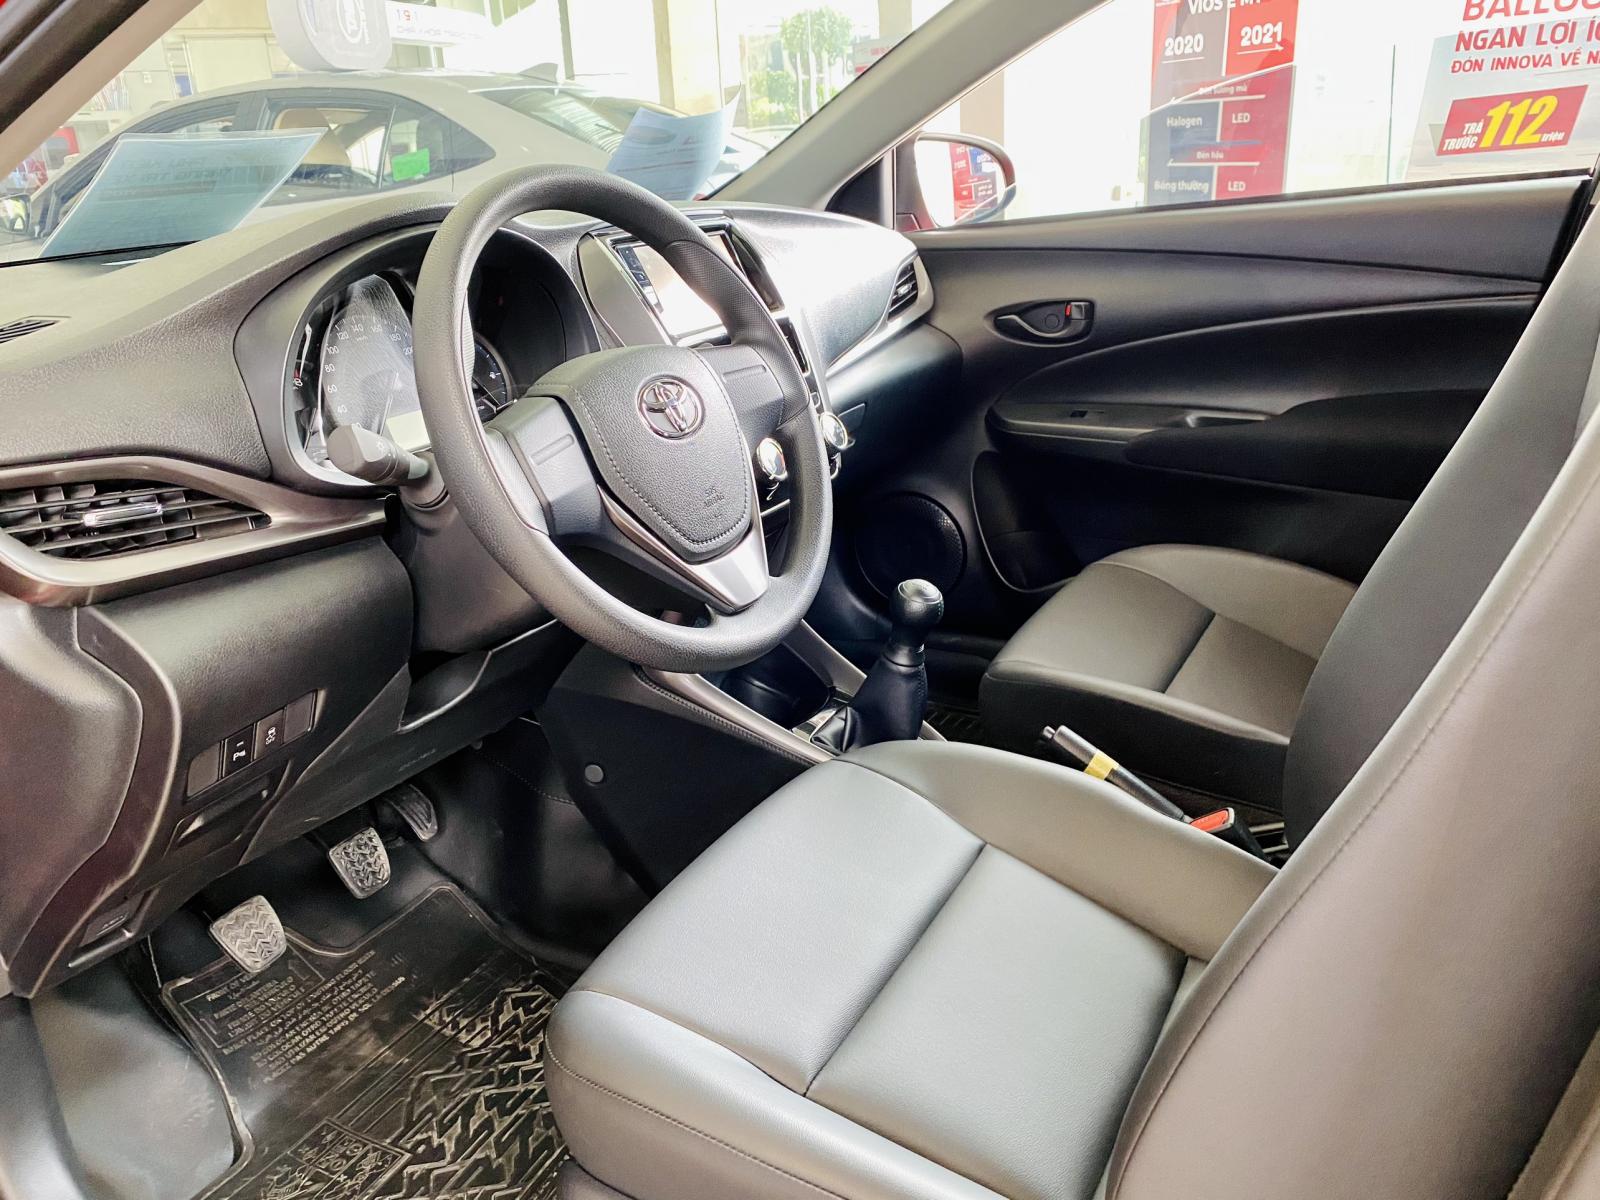 Cần bán xe Toyota Vios 1.5E MT 2021, xả kho giá cực tốt, tặng 1 năm bảo hiểm vật chất-5